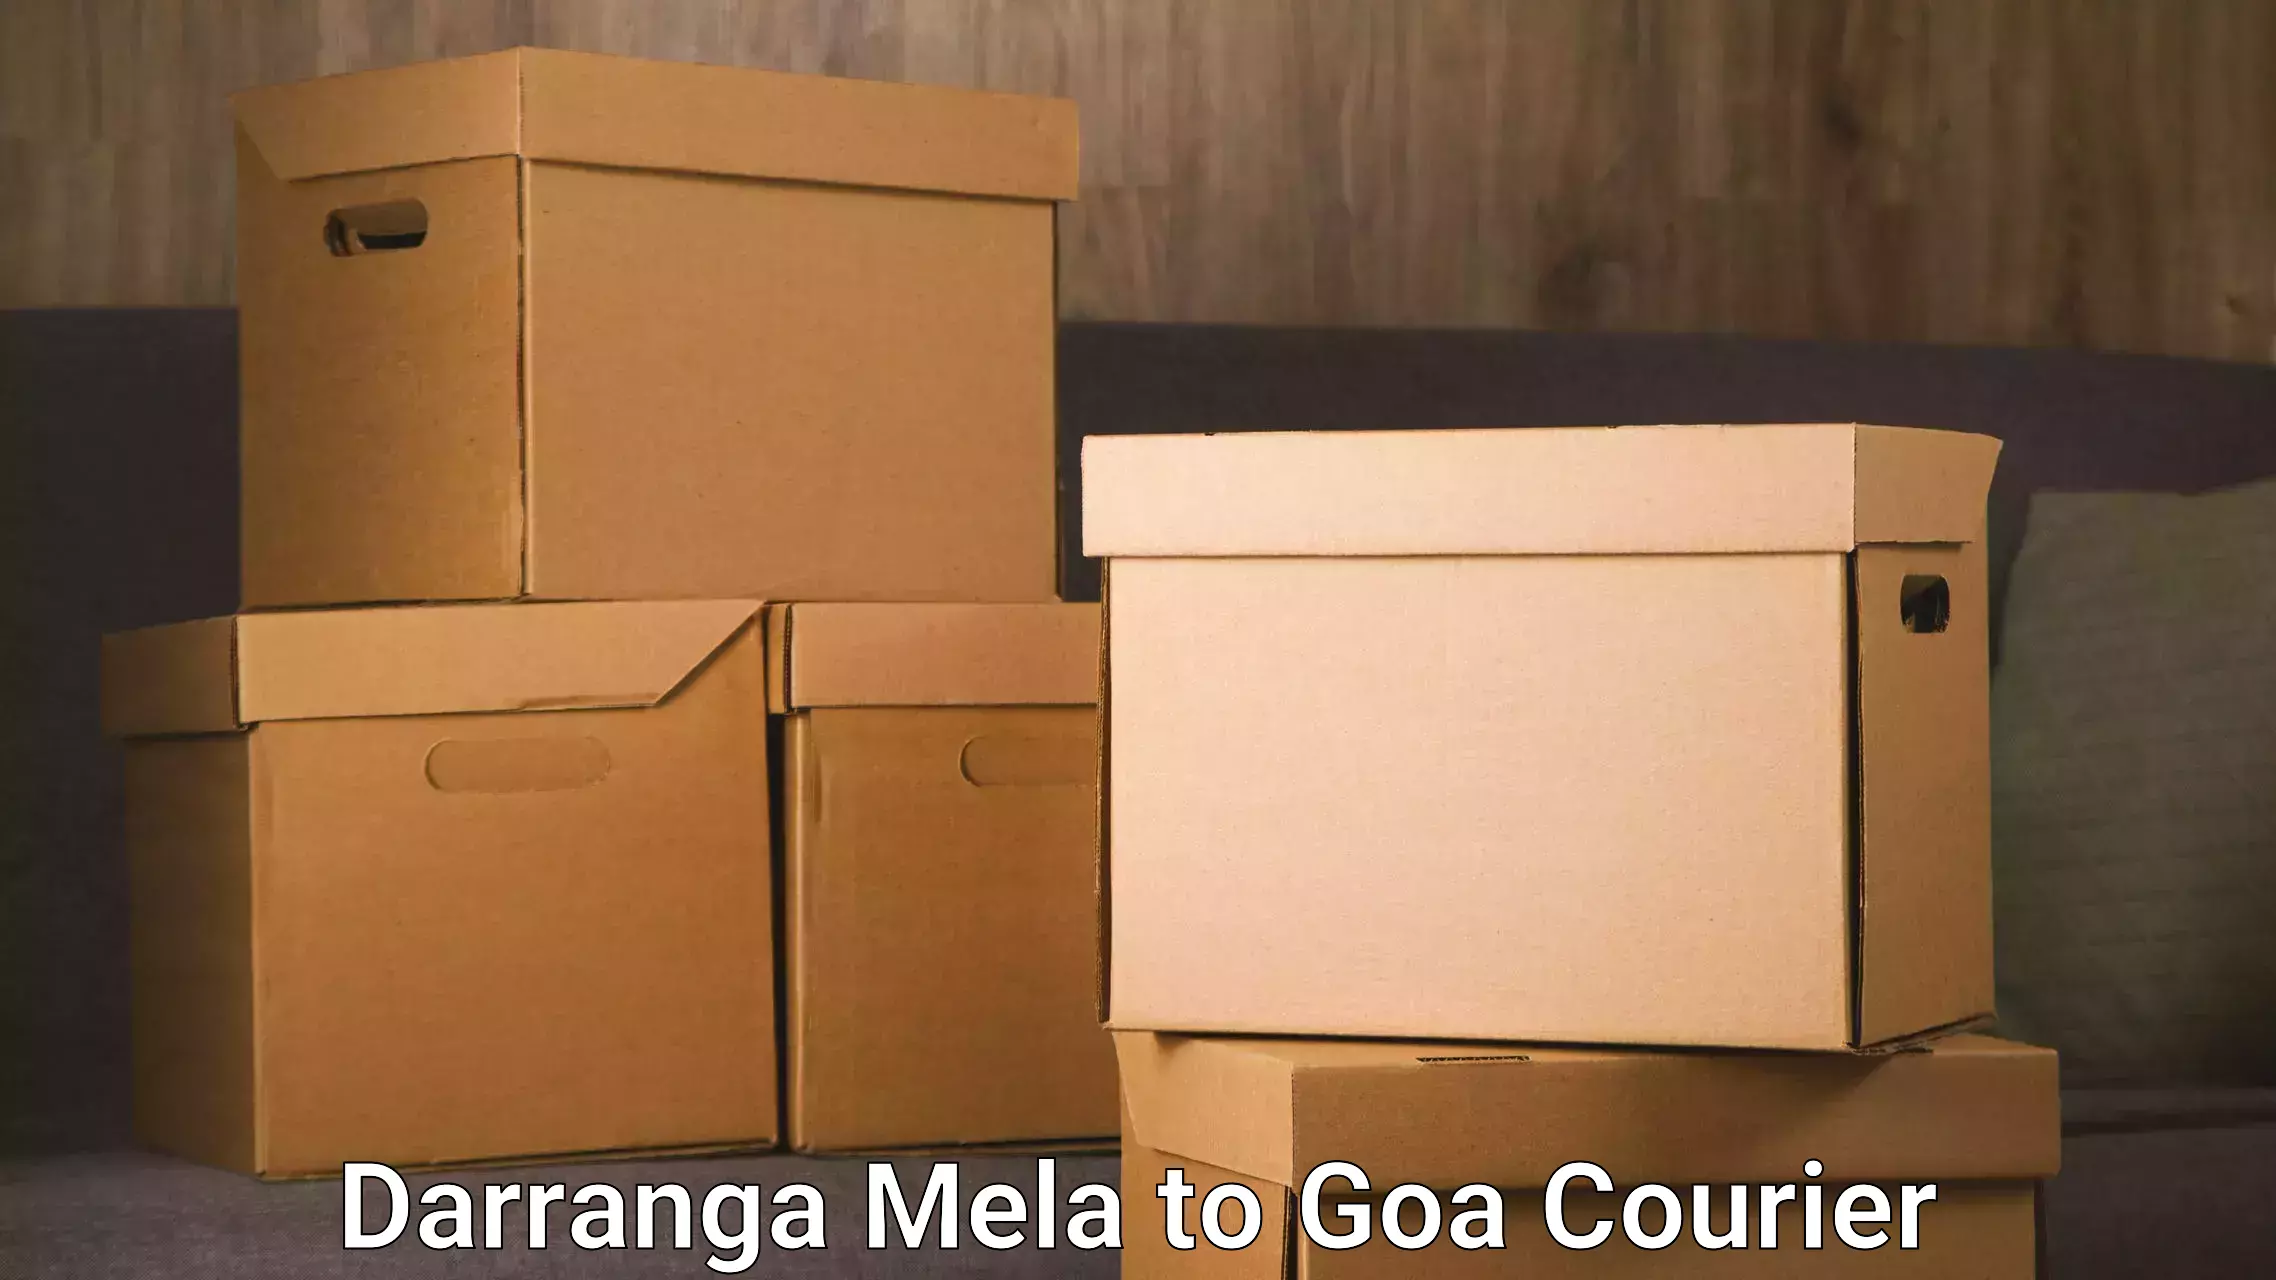 Comprehensive freight services Darranga Mela to Goa